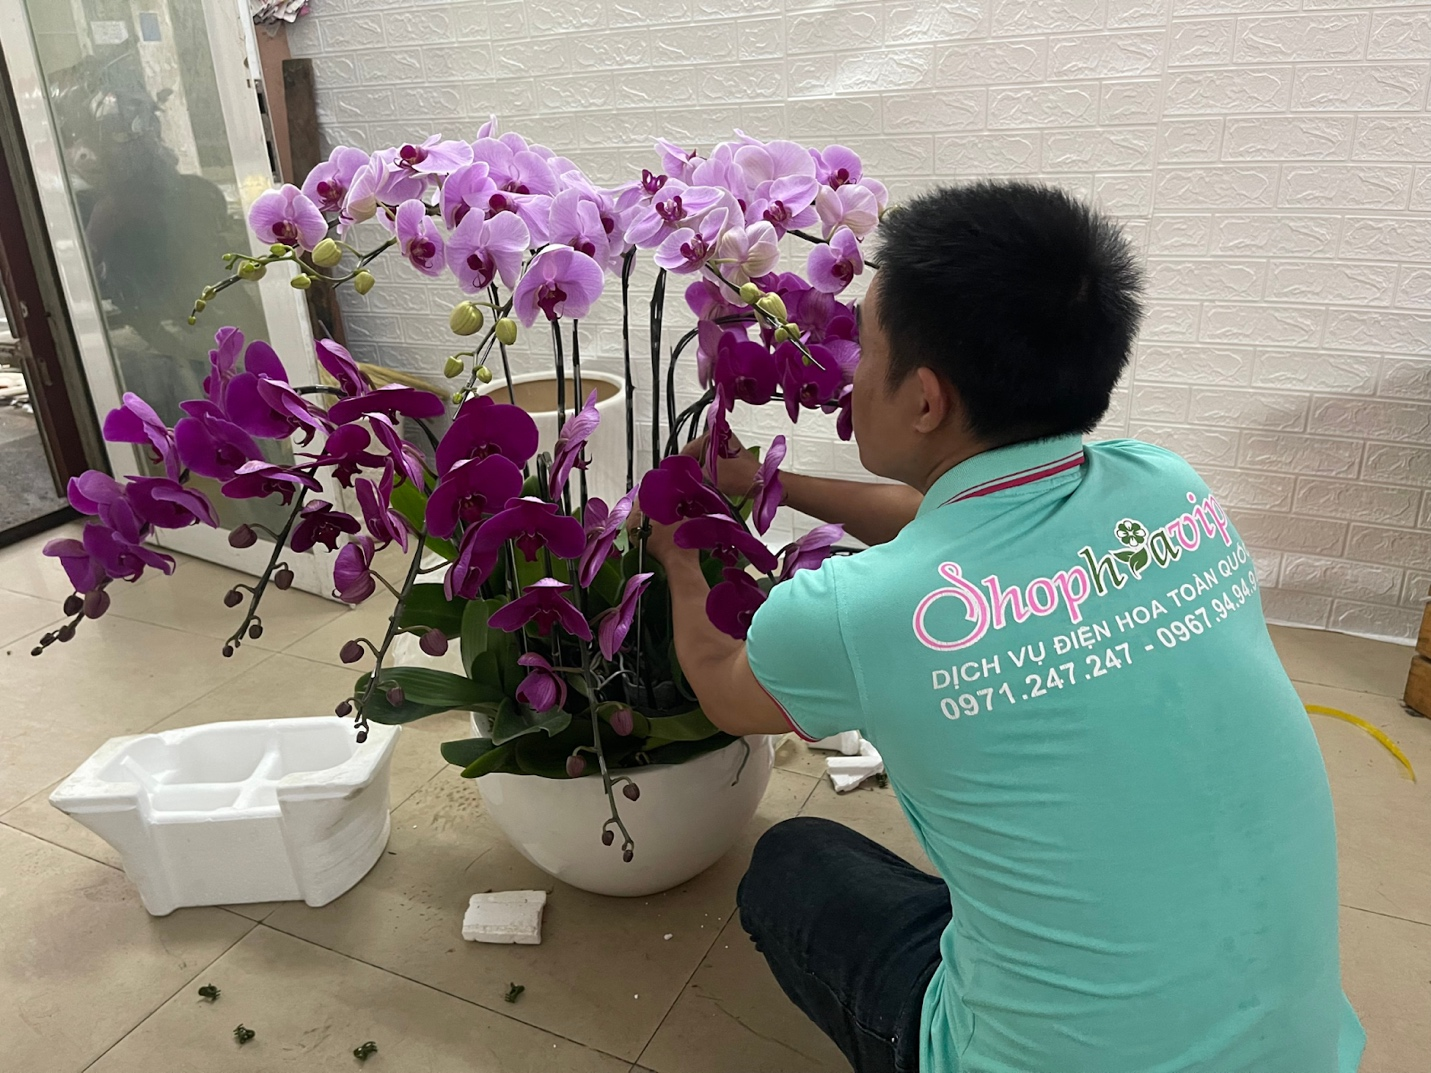 Shop Hoa Vip - Dịch vụ điện hoa cung cấp Lan Hồ Điệp uy tín, chất lượng